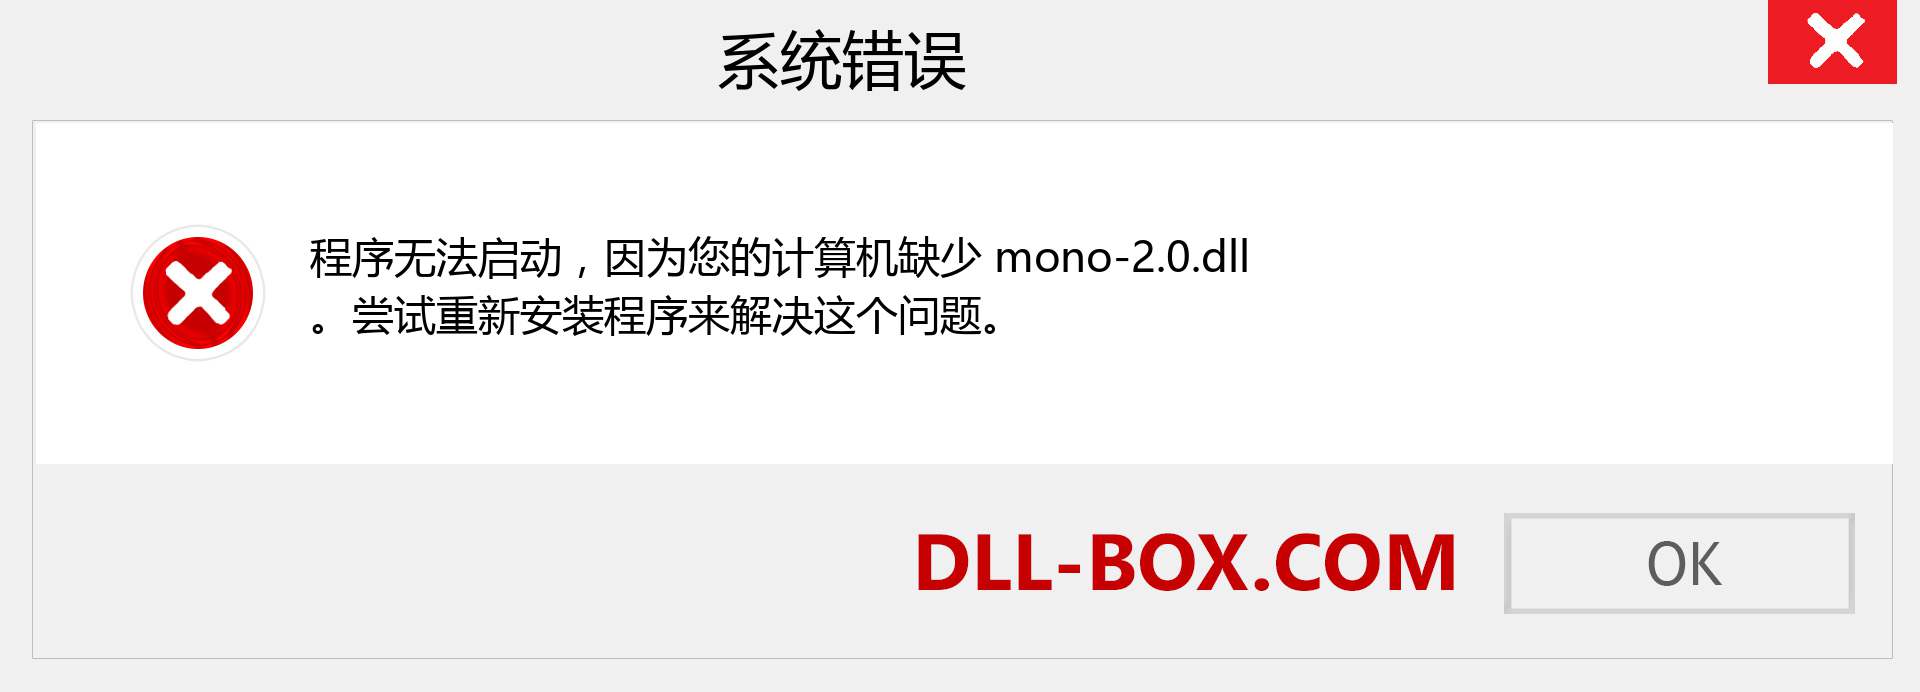 mono-2.0.dll 文件丢失？。 适用于 Windows 7、8、10 的下载 - 修复 Windows、照片、图像上的 mono-2.0 dll 丢失错误